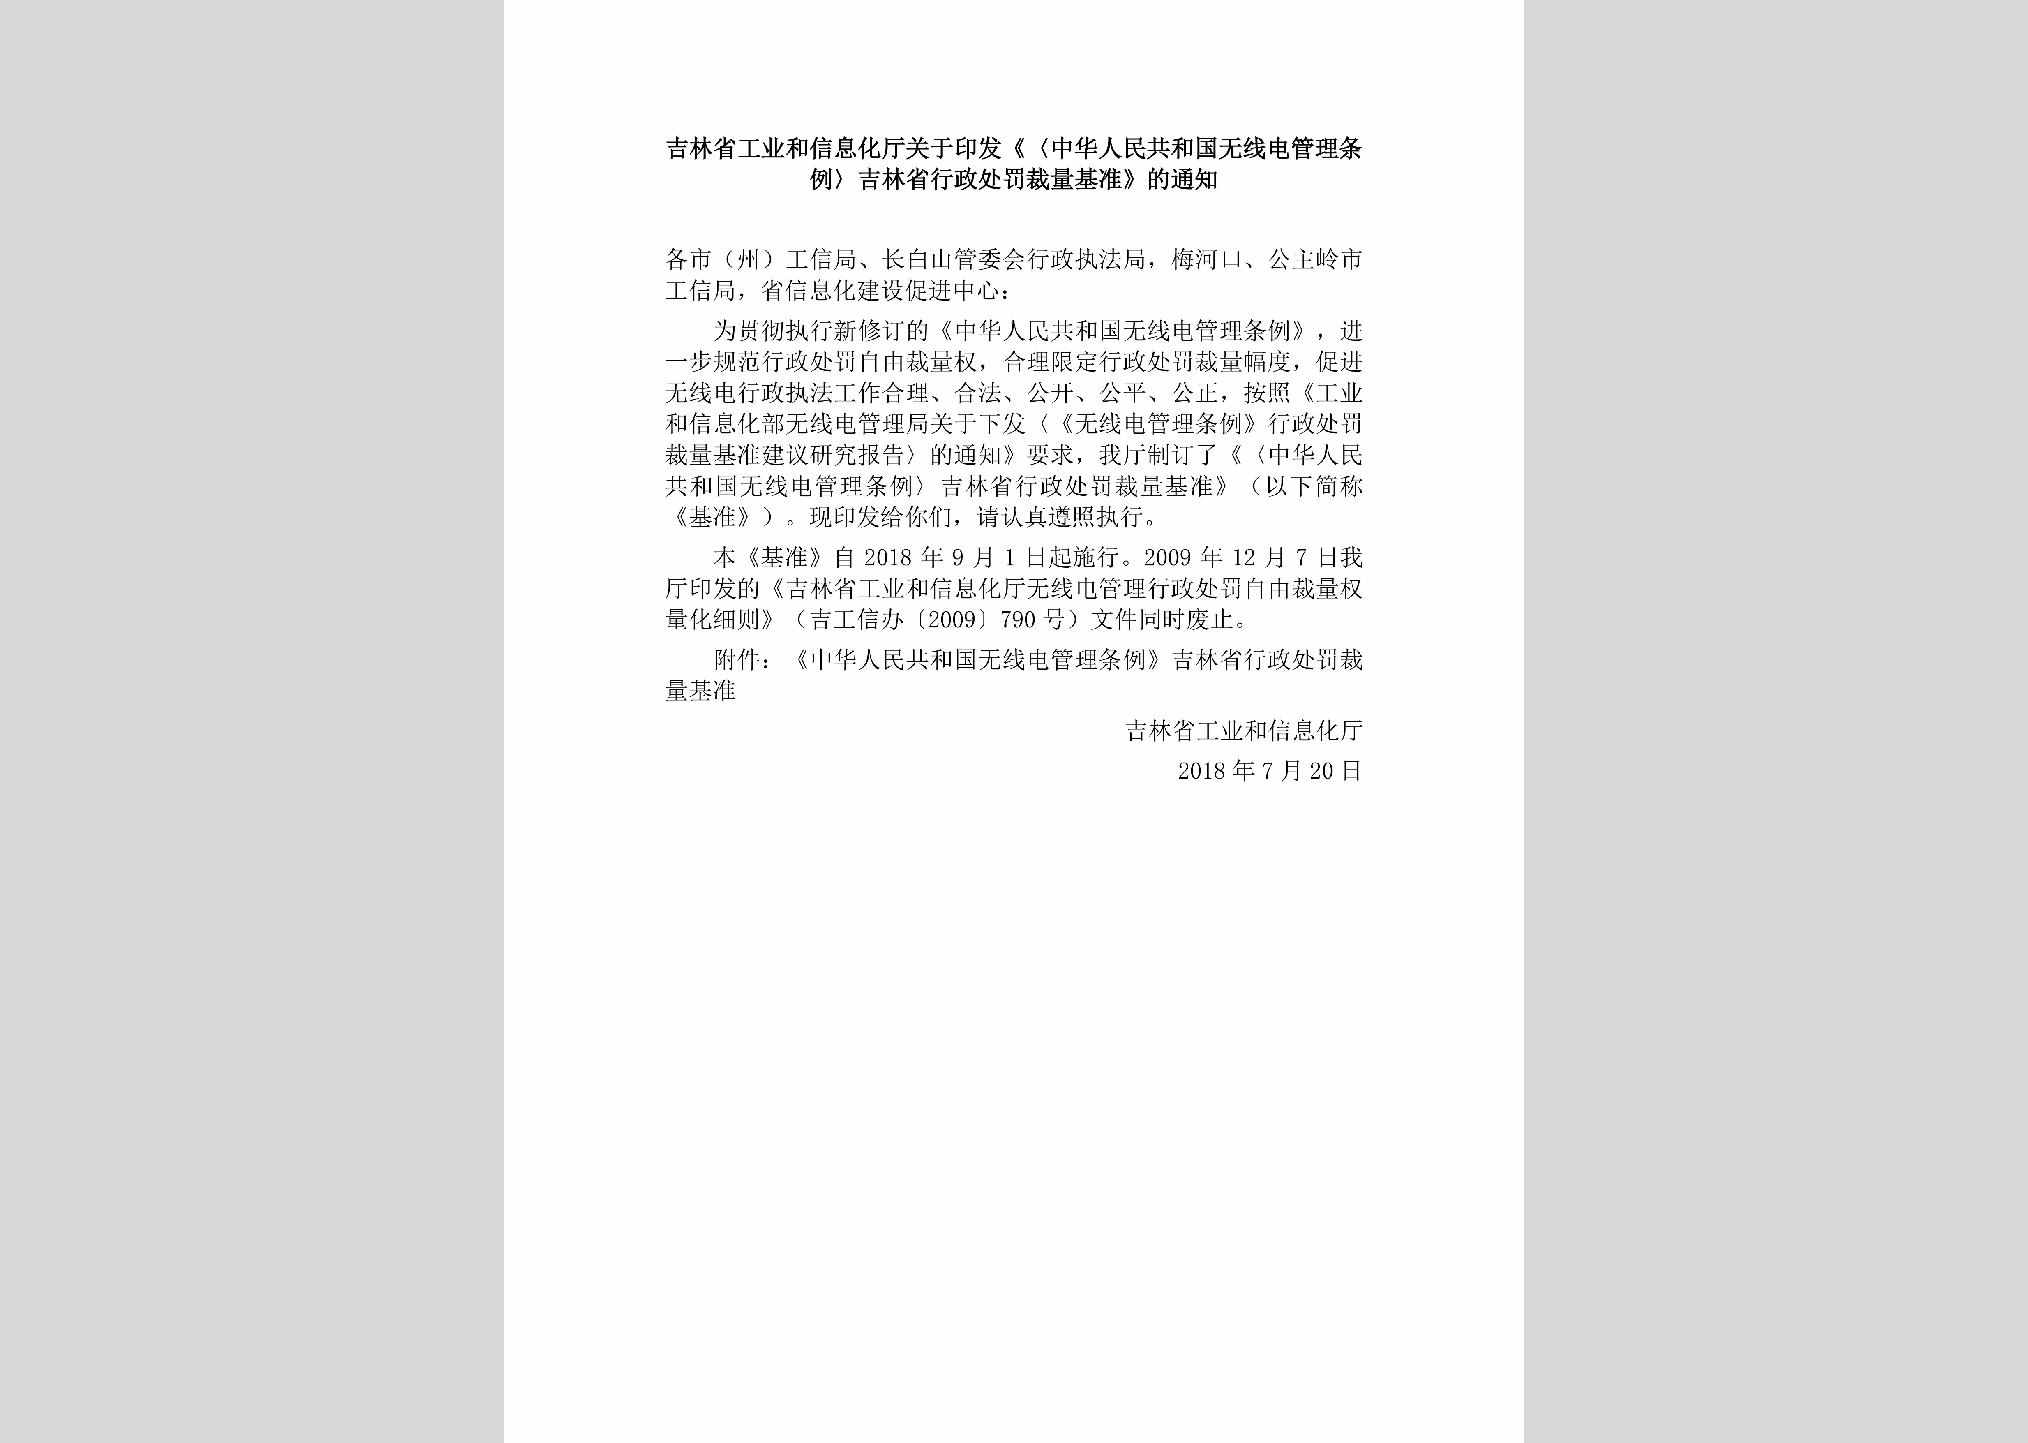 JL-XZCFCLJZ-2018：吉林省工业和信息化厅关于印发《〈中华人民共和国无线电管理条例〉吉林省行政处罚裁量基准》的通知